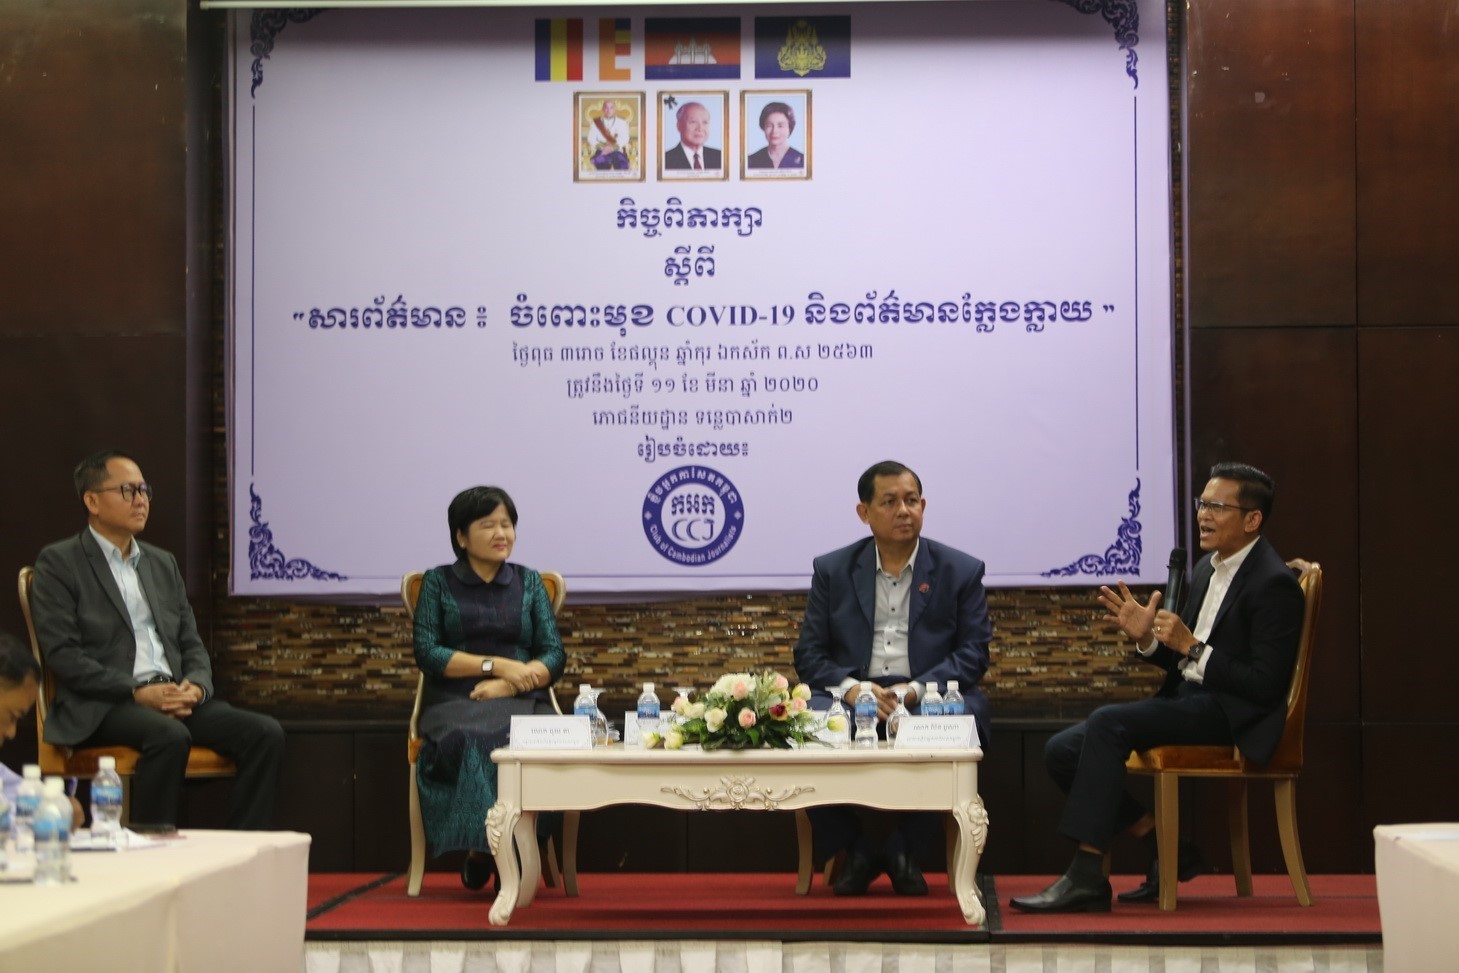 Ngày 11/3/2020, Bộ Thông tin và Bộ Y tế Campuchia phối hợp Câu lạc bộ Nhà báo Campuchia tổ chức họp báo công bố “Tình hình dịch bệnh COVID-19 và tình trạng tin giả hiện nay” cho phóng viên các báo và giới truyền thông tại Campuchia. (Ảnh: Vũ Hùng/PV TTXVN)